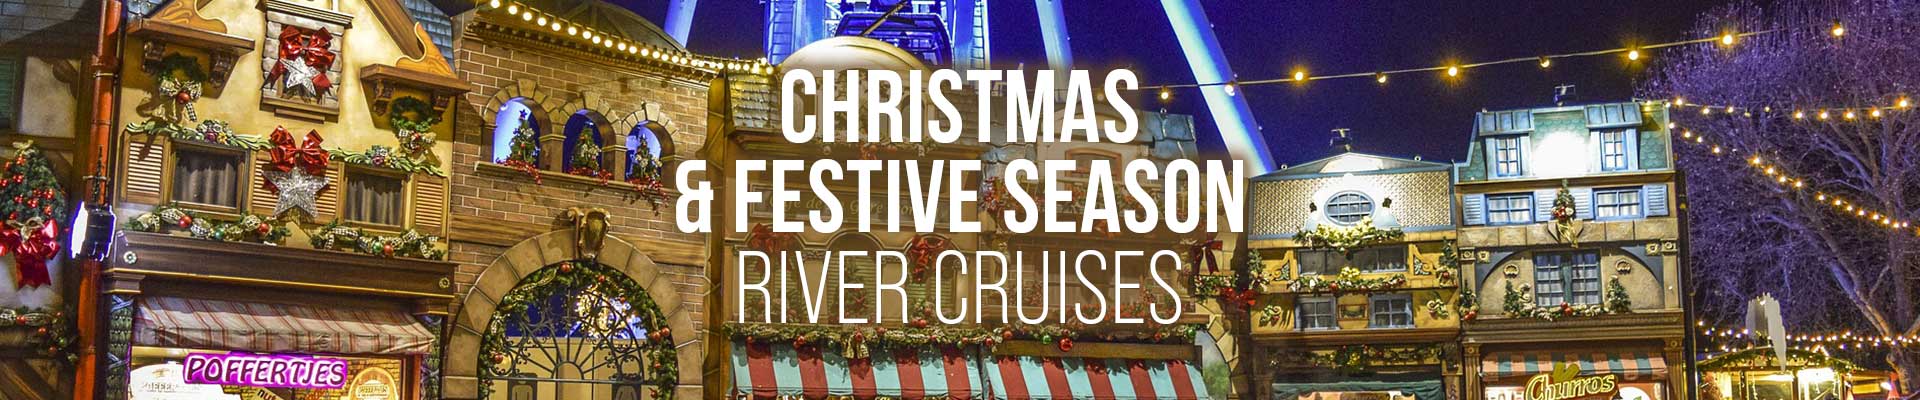 Christmas River Cruises